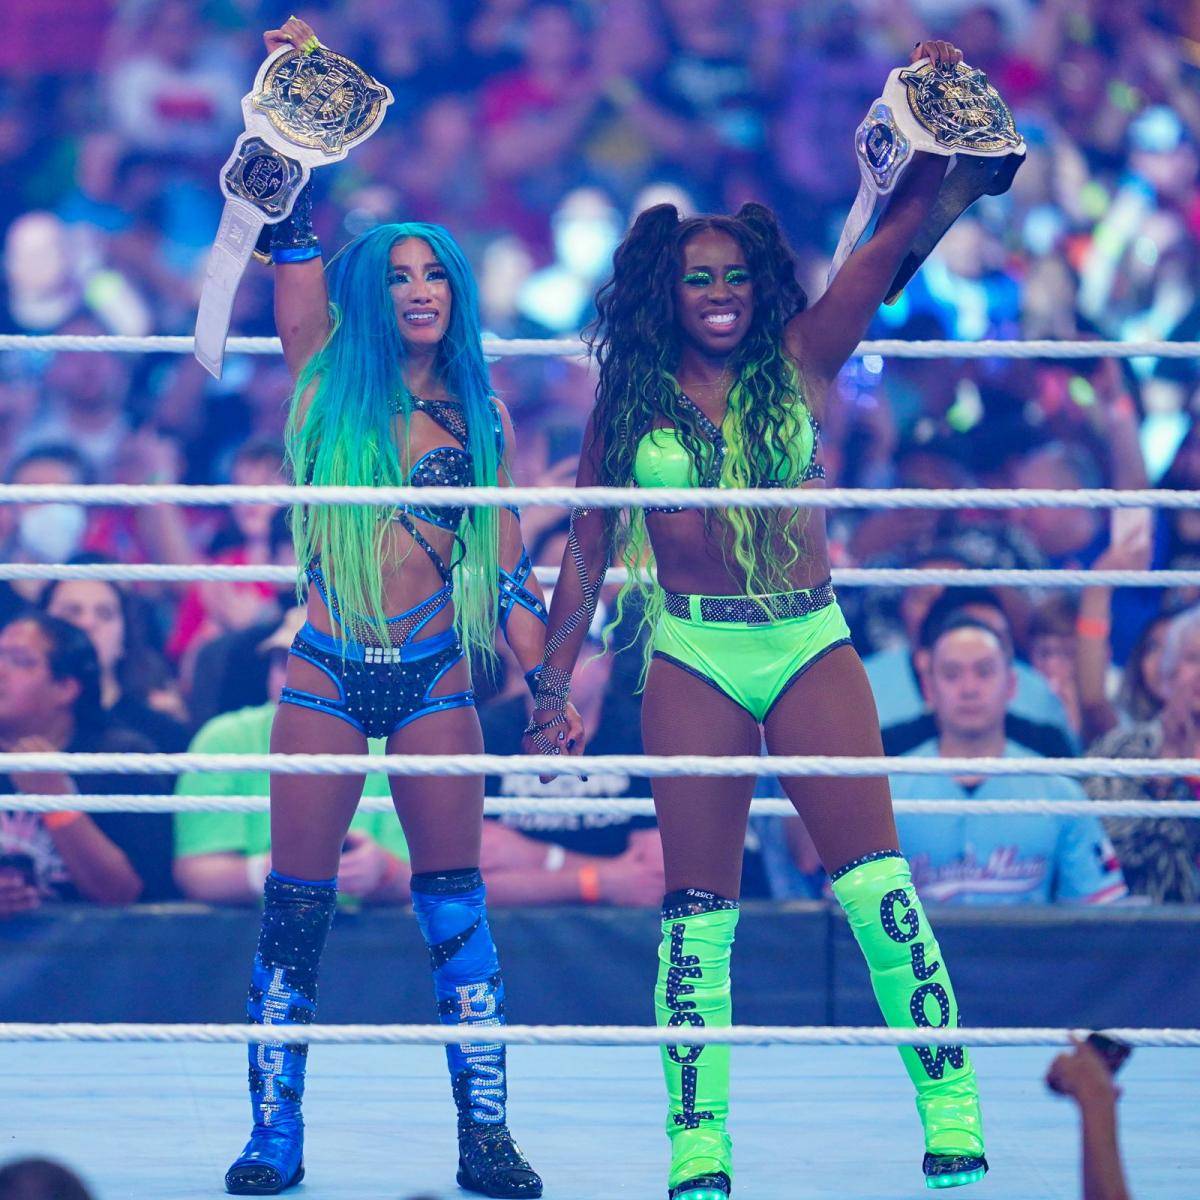 Das Champion-Duo Sasha Banks und Naomi verlässt während der TV-Show Monday Night RAW die Arena und lässt den angekündigten Hauptkampf platzen. Was ist der wahre Grund?